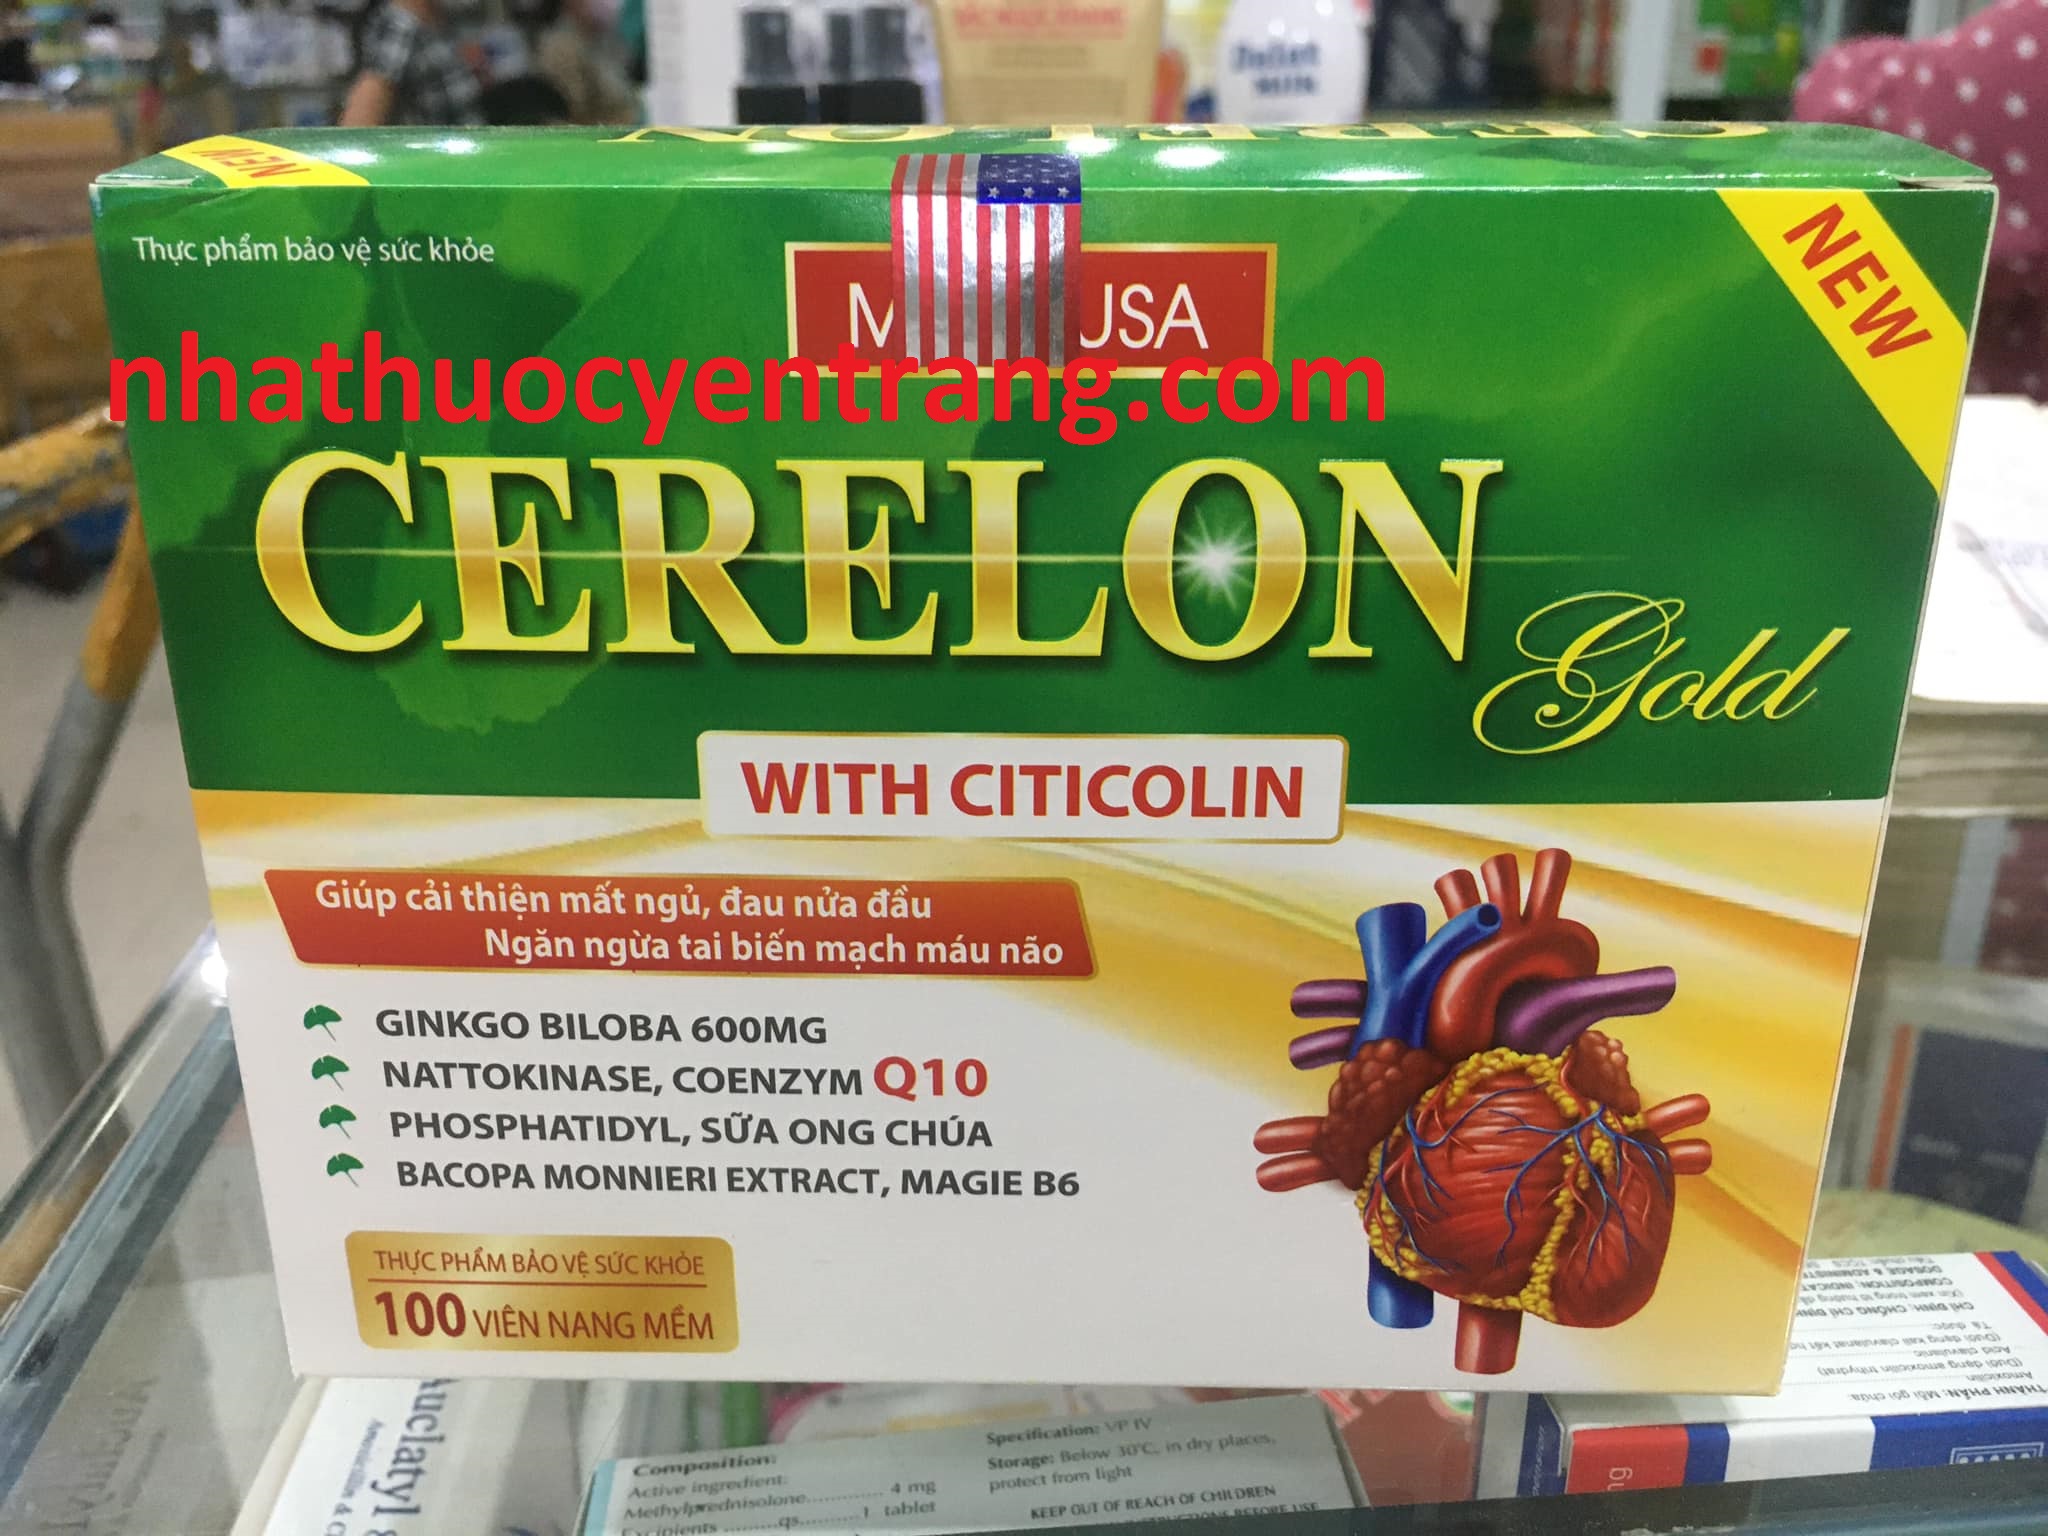 Cerelon gold with citicolin